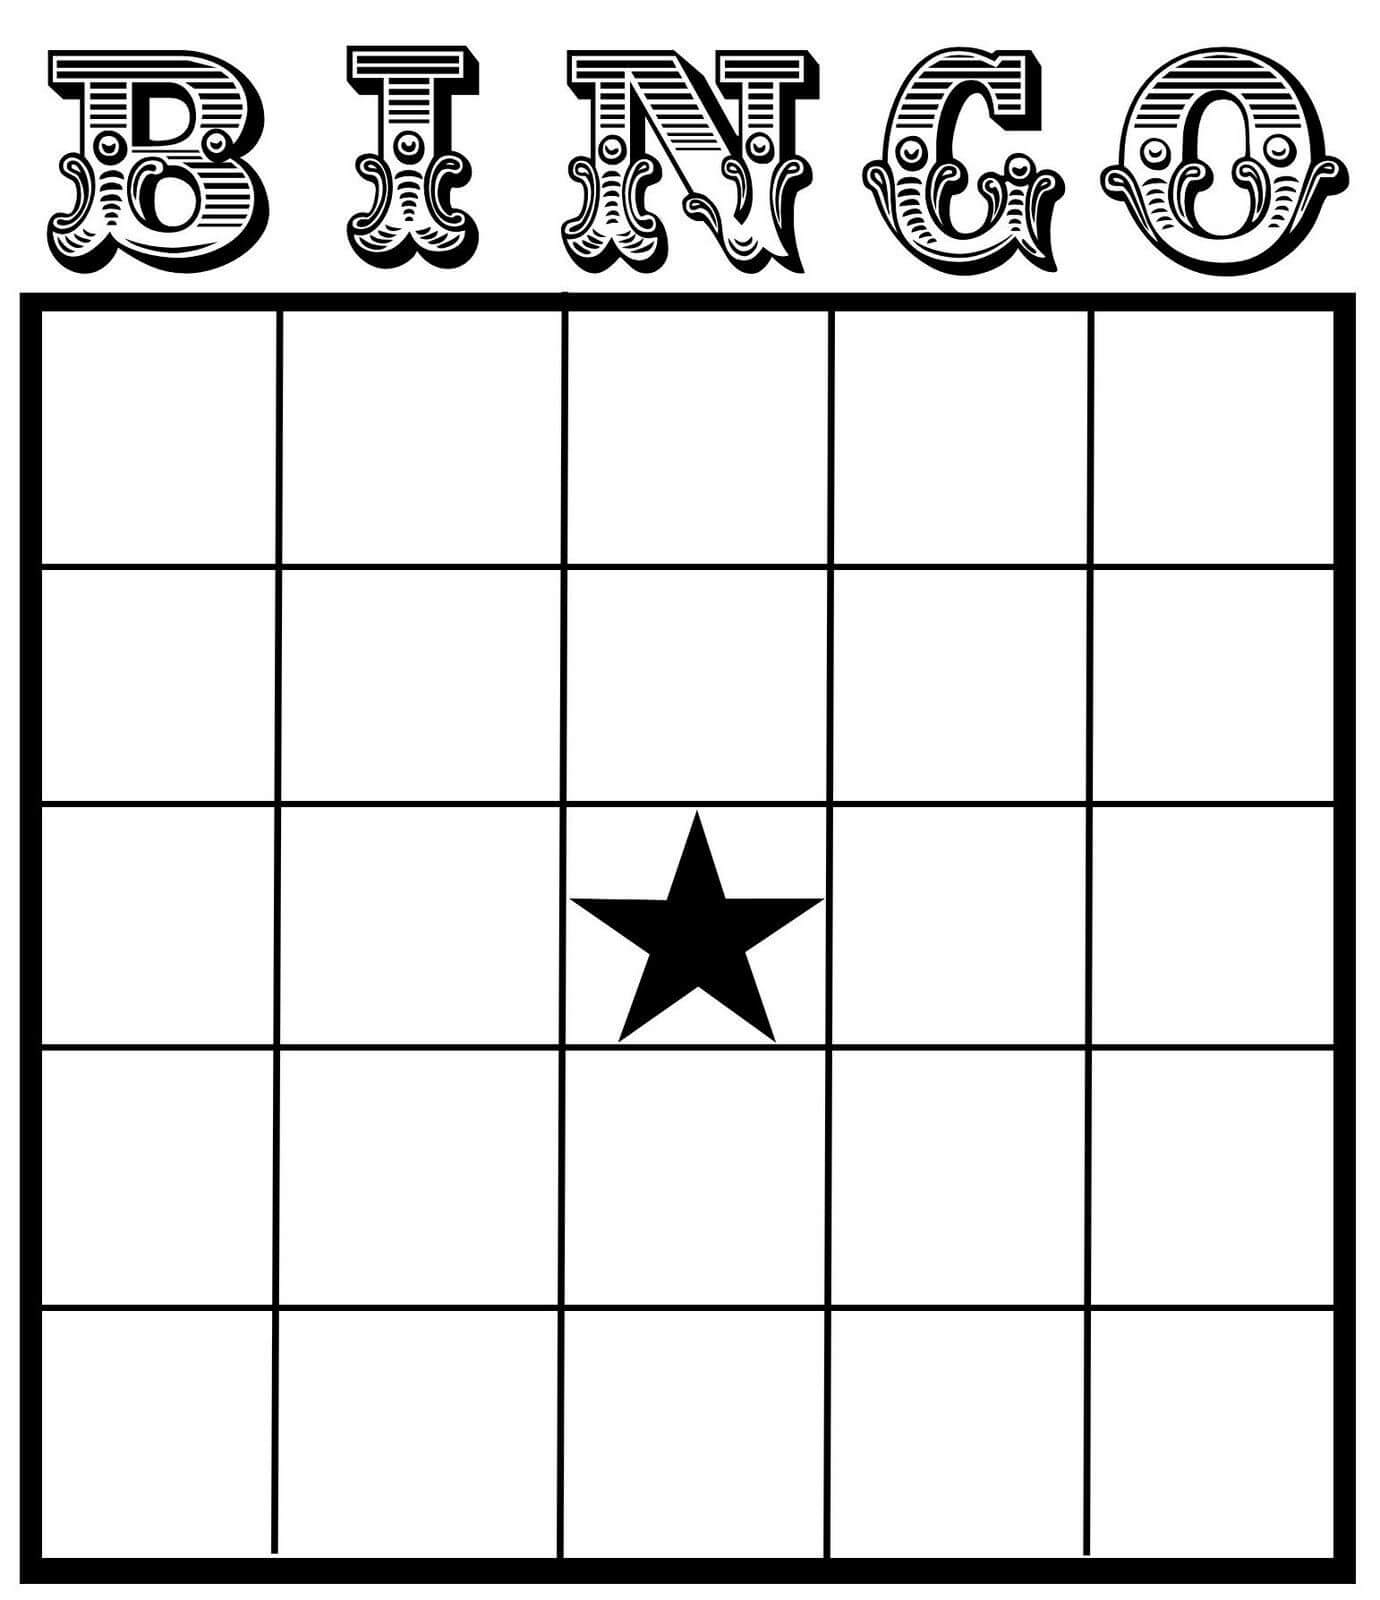 Let's Play Some Roller Derby Bingo! Via /r/rollerderby Inside Blank Bingo Template Pdf